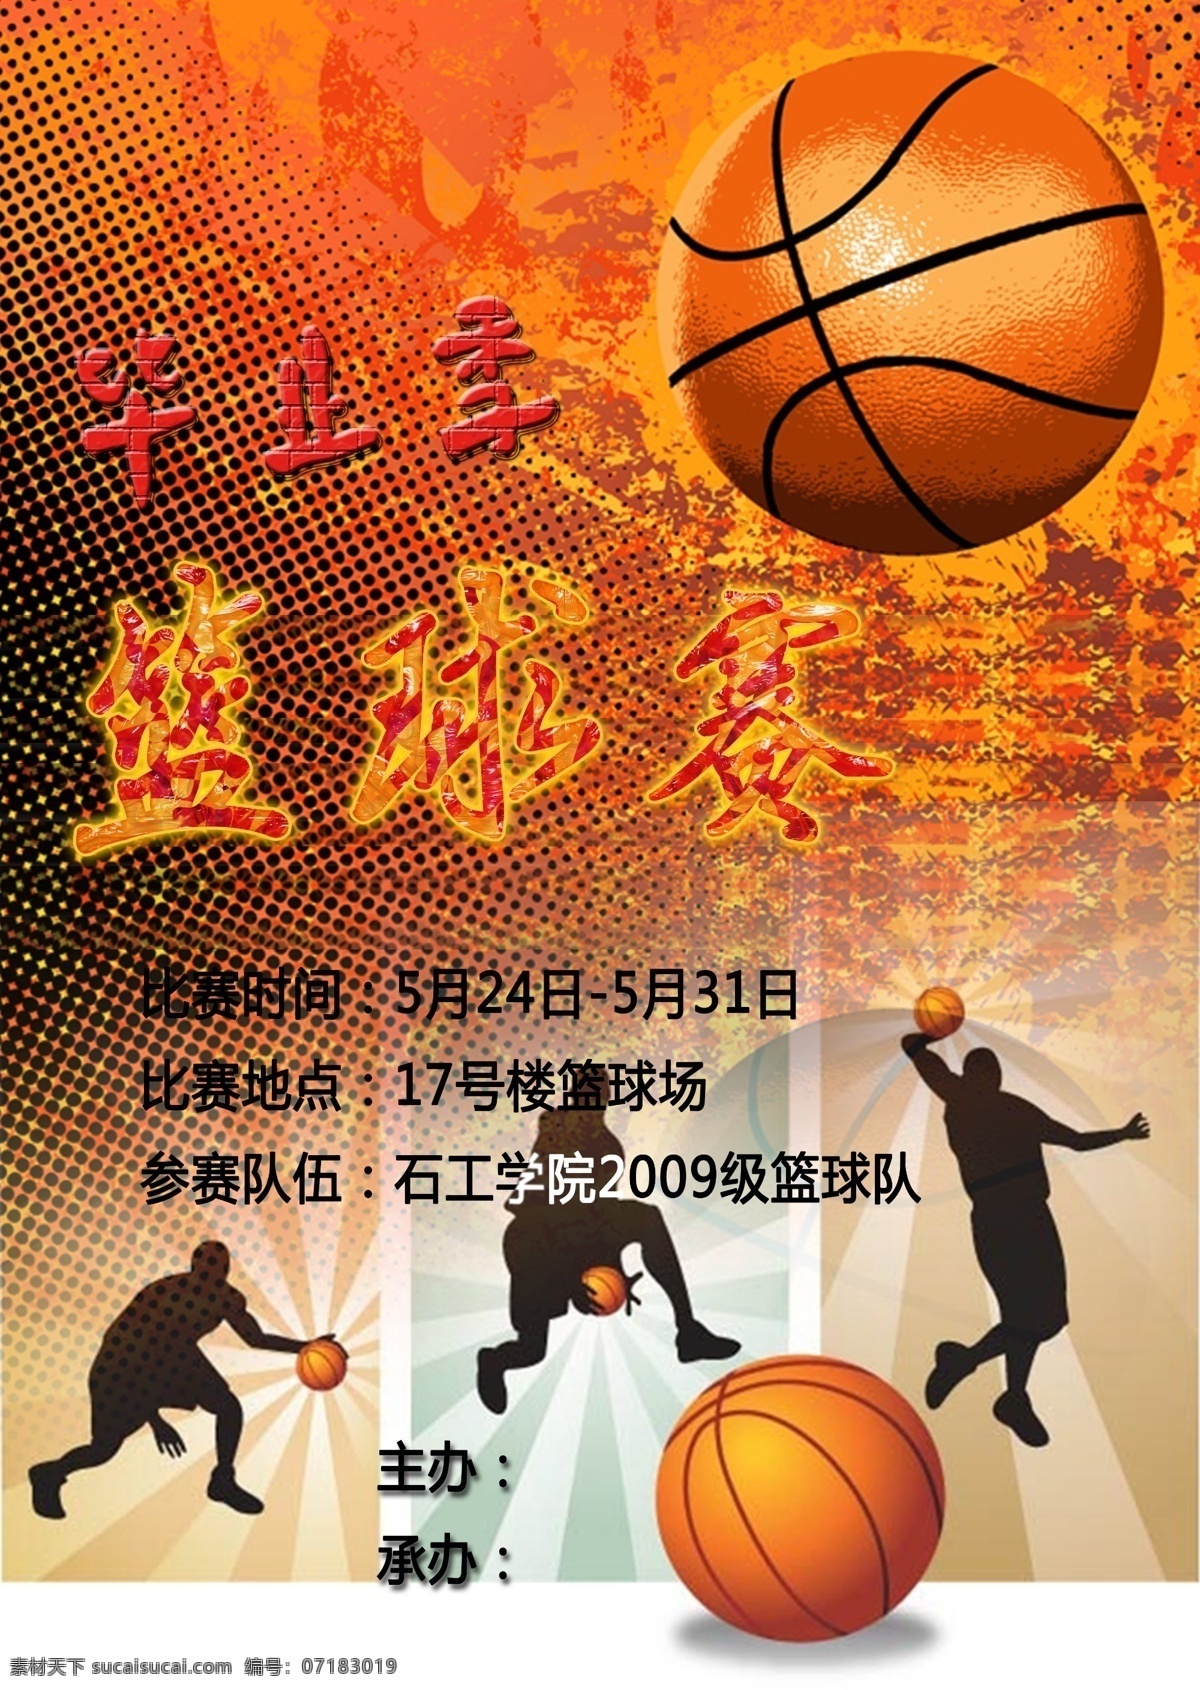 毕业生 篮球赛 海报 毕业季 大学生 运动会 广告设计模板 源文件